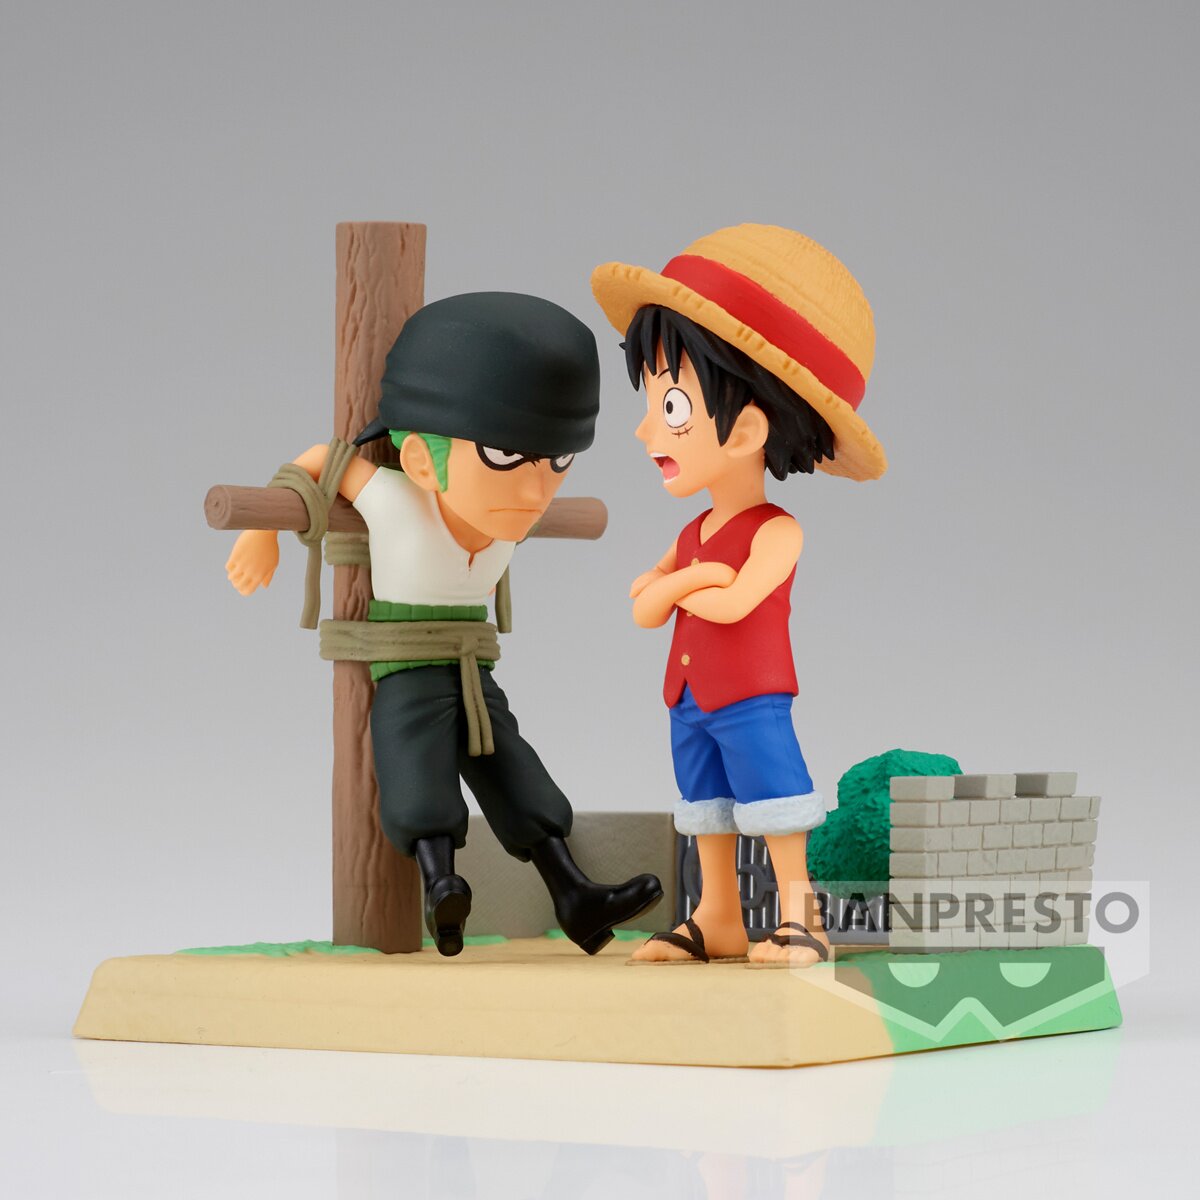 One Piece Banpresto World Collectible Figurine Monkey D. Luffy & Shanks